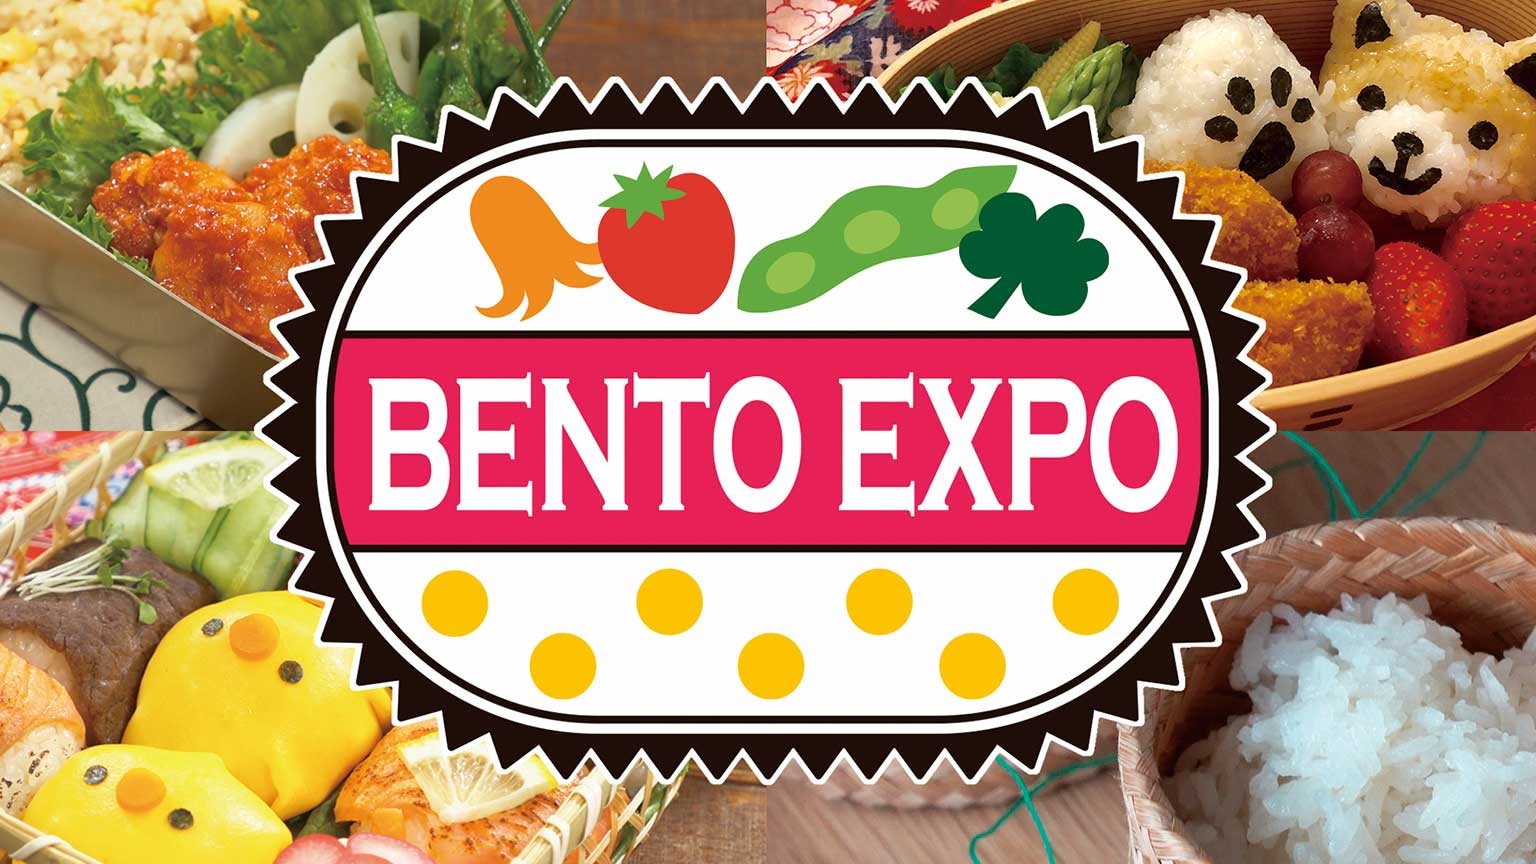 Triển lãm bento
BENTO EXPO